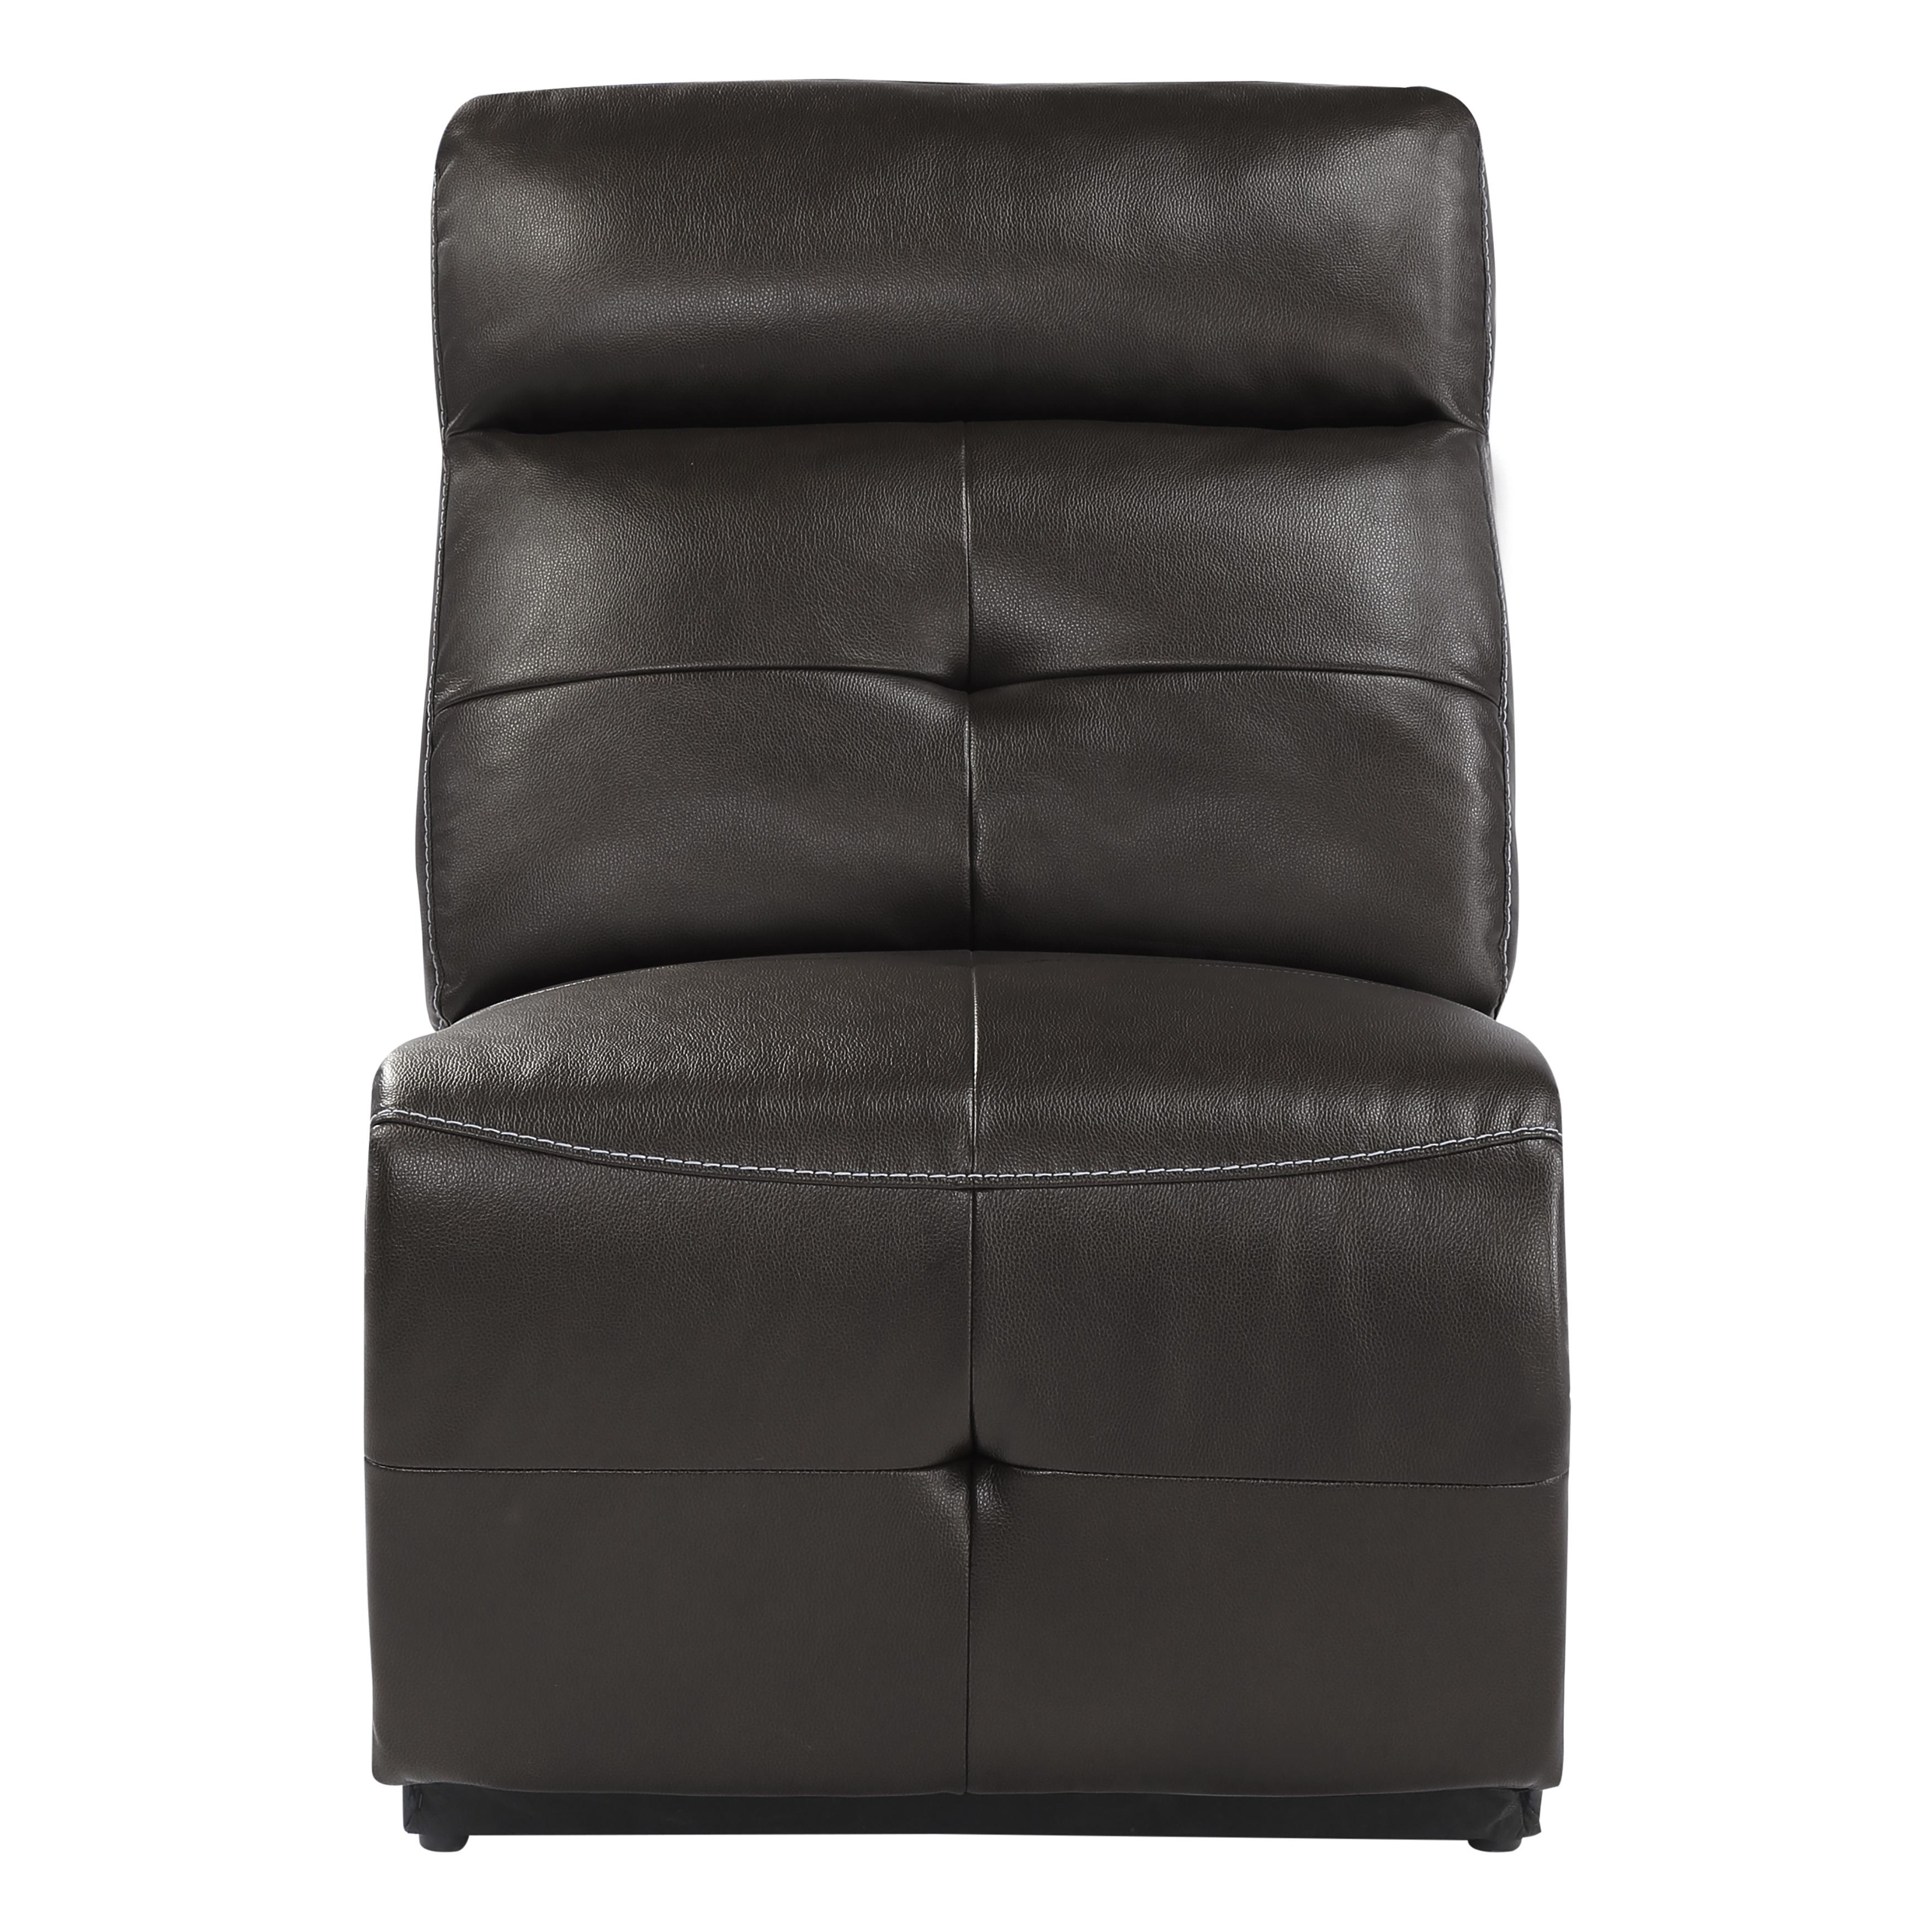 Modern Armless Reclining Chair 9469DBR-AR Avenue 9469DBR-AR in Dark Brown Faux Leather